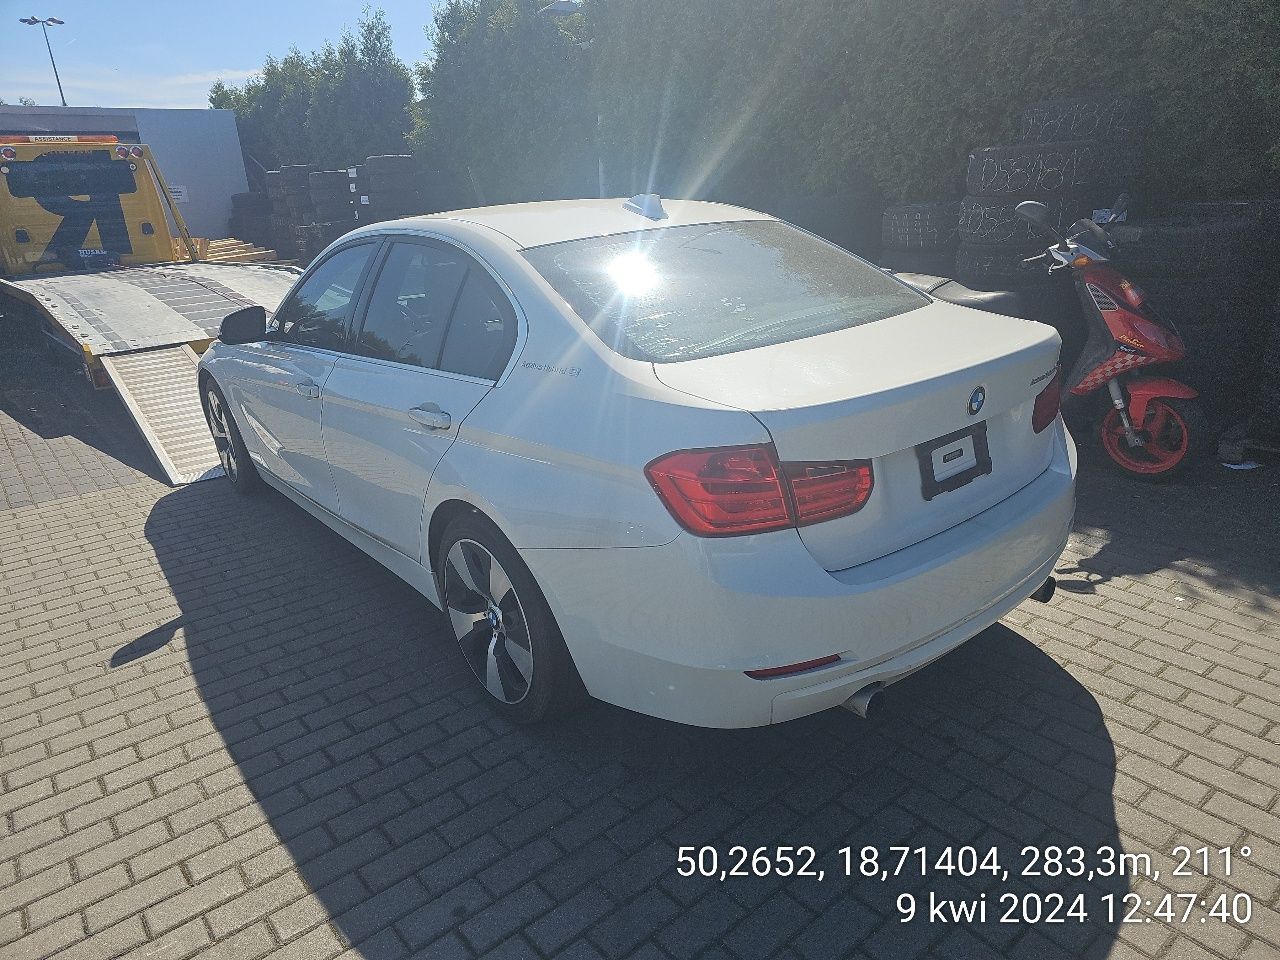 BMW 335i Activehybryd sprzedaż zamiana uszkodzona oclona !!